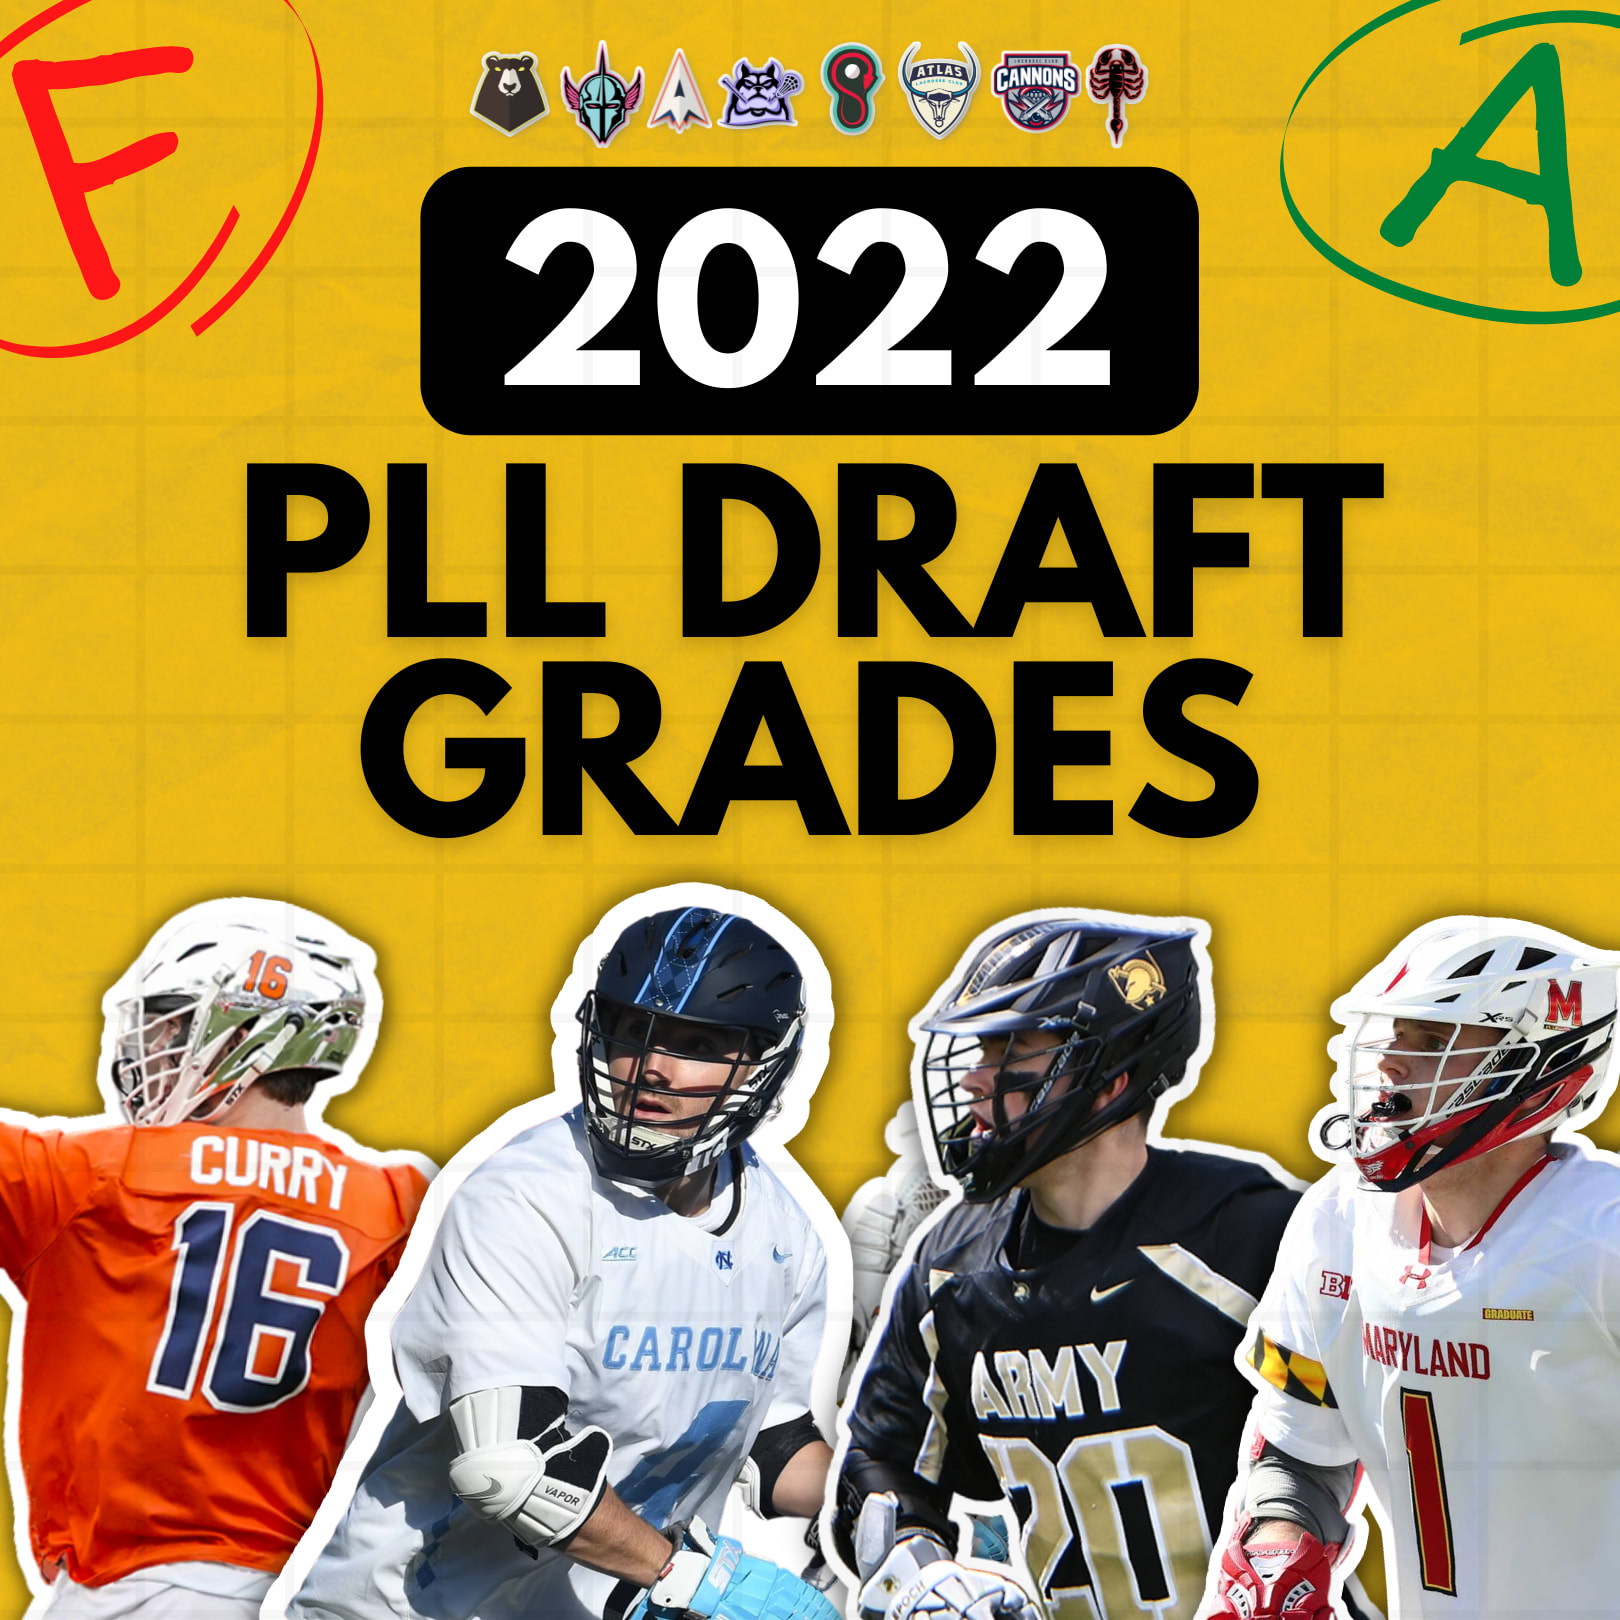 team draft grades 2022